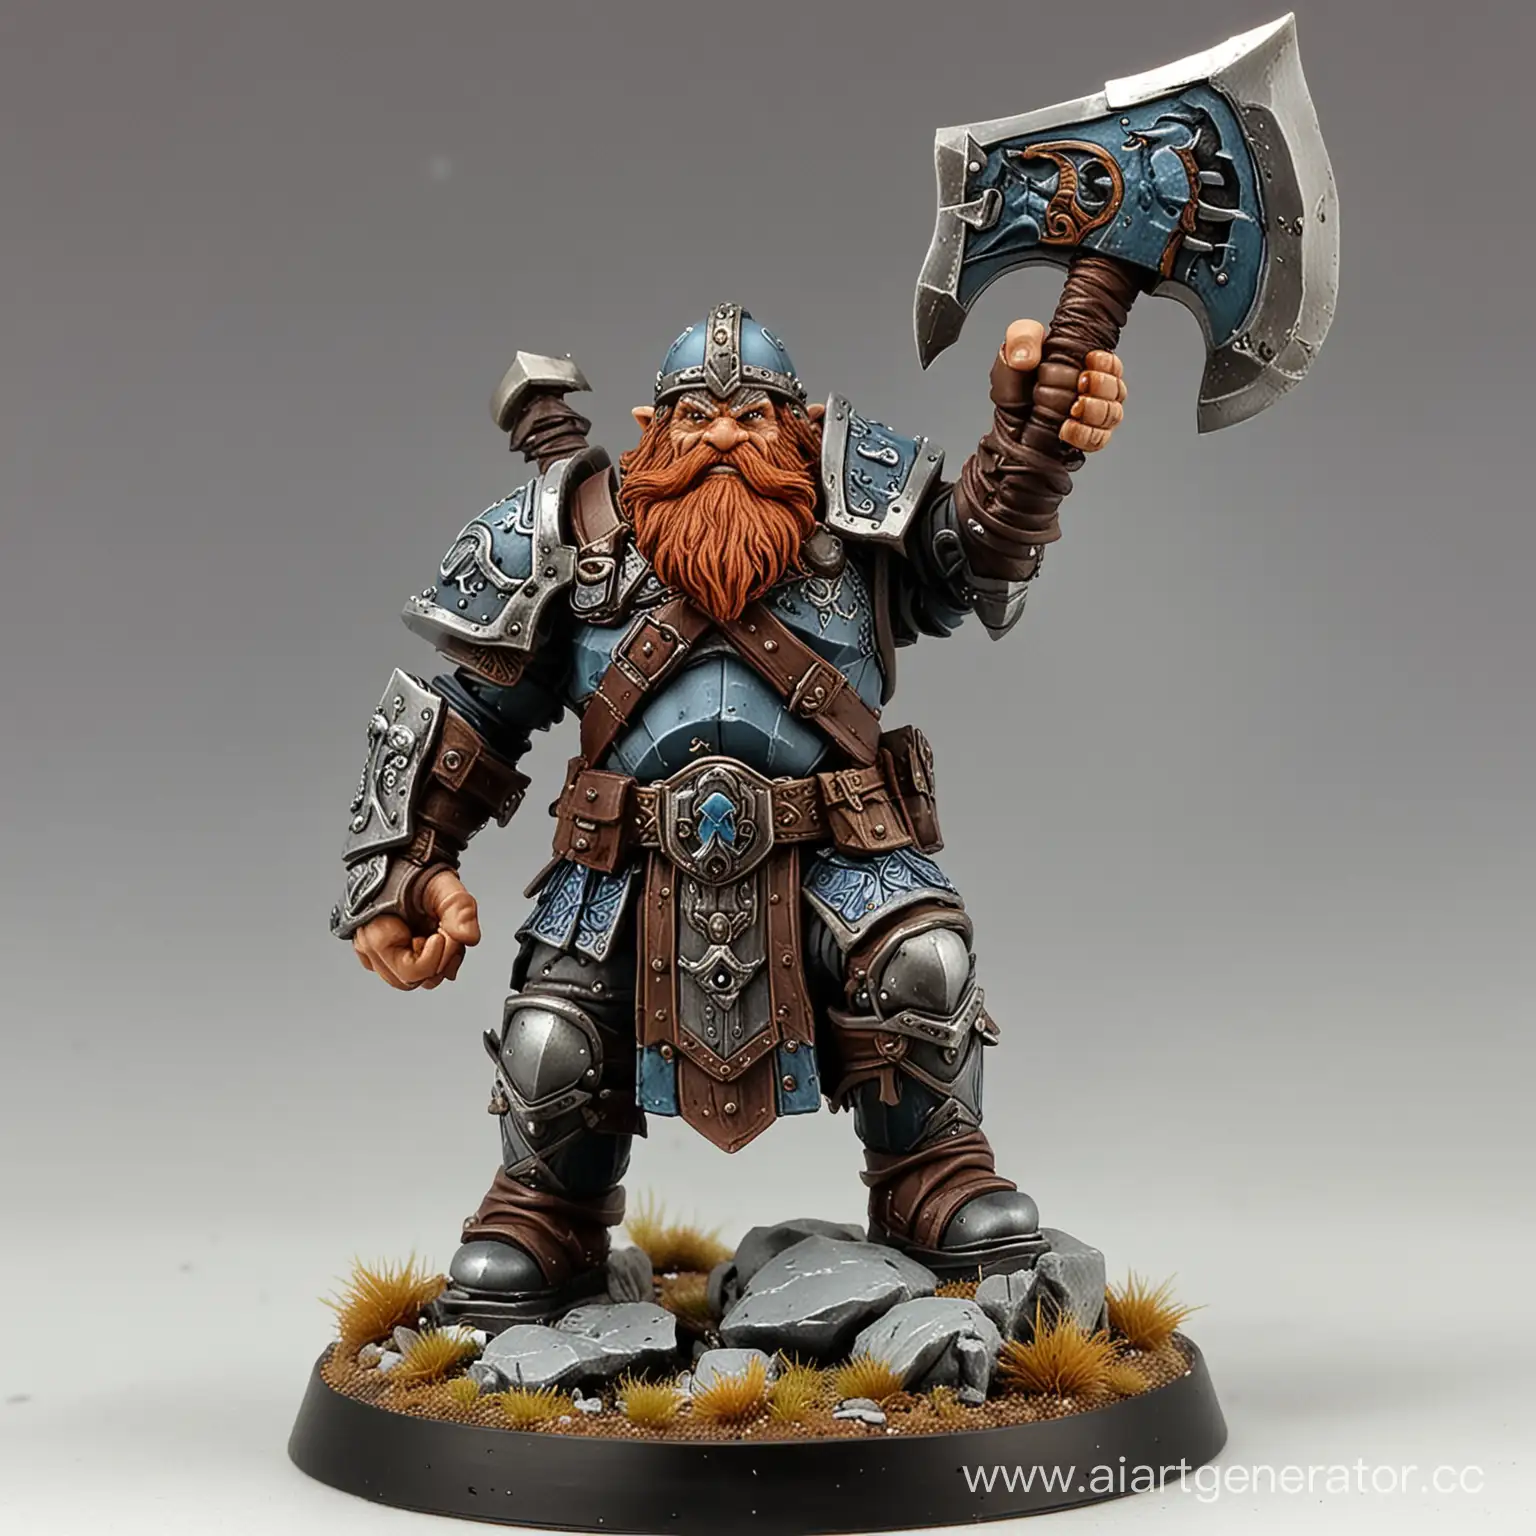 Dwarf-Echo-Knight-Wielding-Great-Axe-in-Mythical-Battle